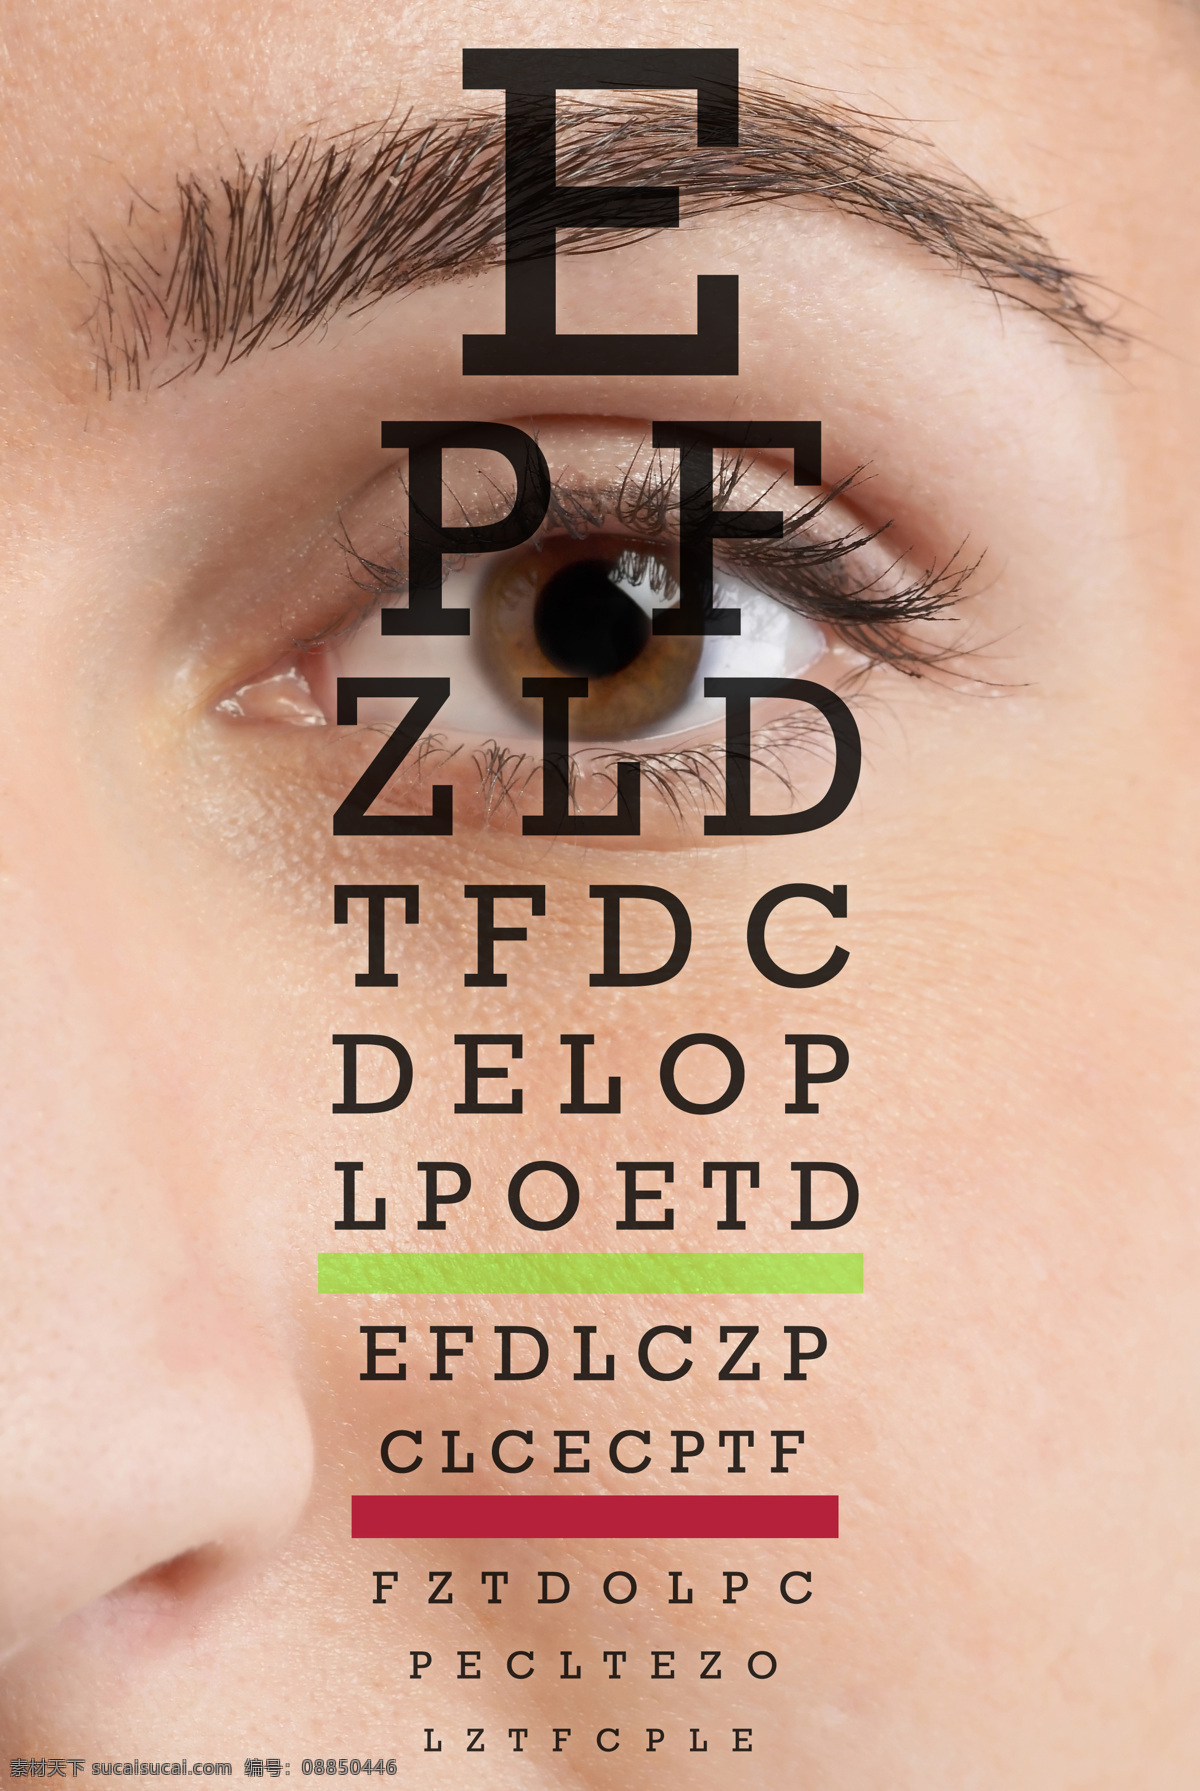 眼睛 测试 e字 视力测试表 字母 视力 近视 字母测试表 字母视力表 测视力 眼睛保护 保护眼睛 近视眼 视力模糊 生活百科 人体器官图 人物图片